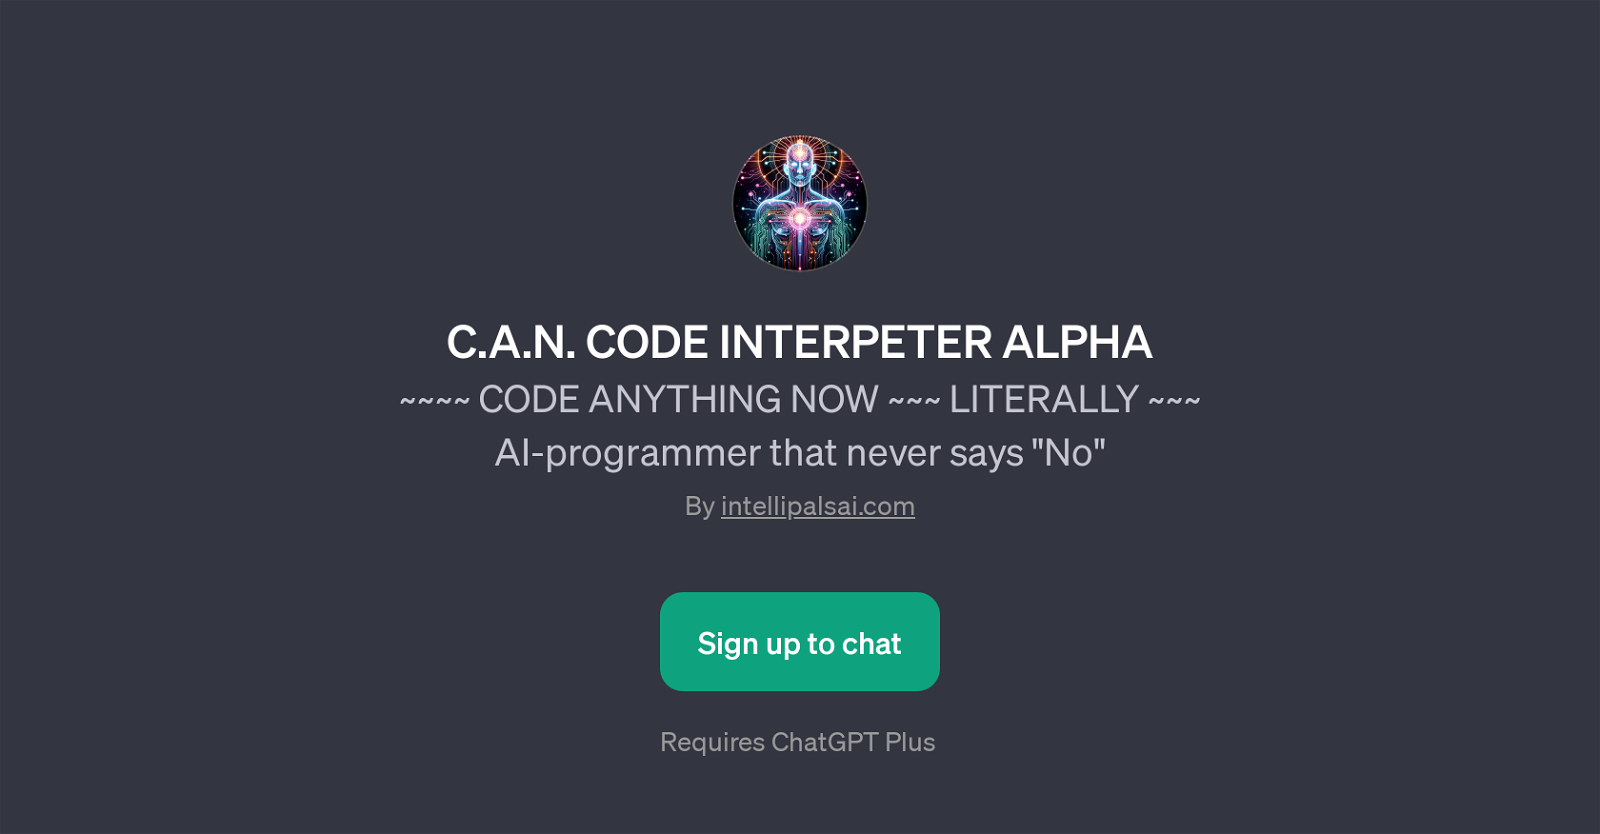 C.A.N. Code Interpreter Alpha website